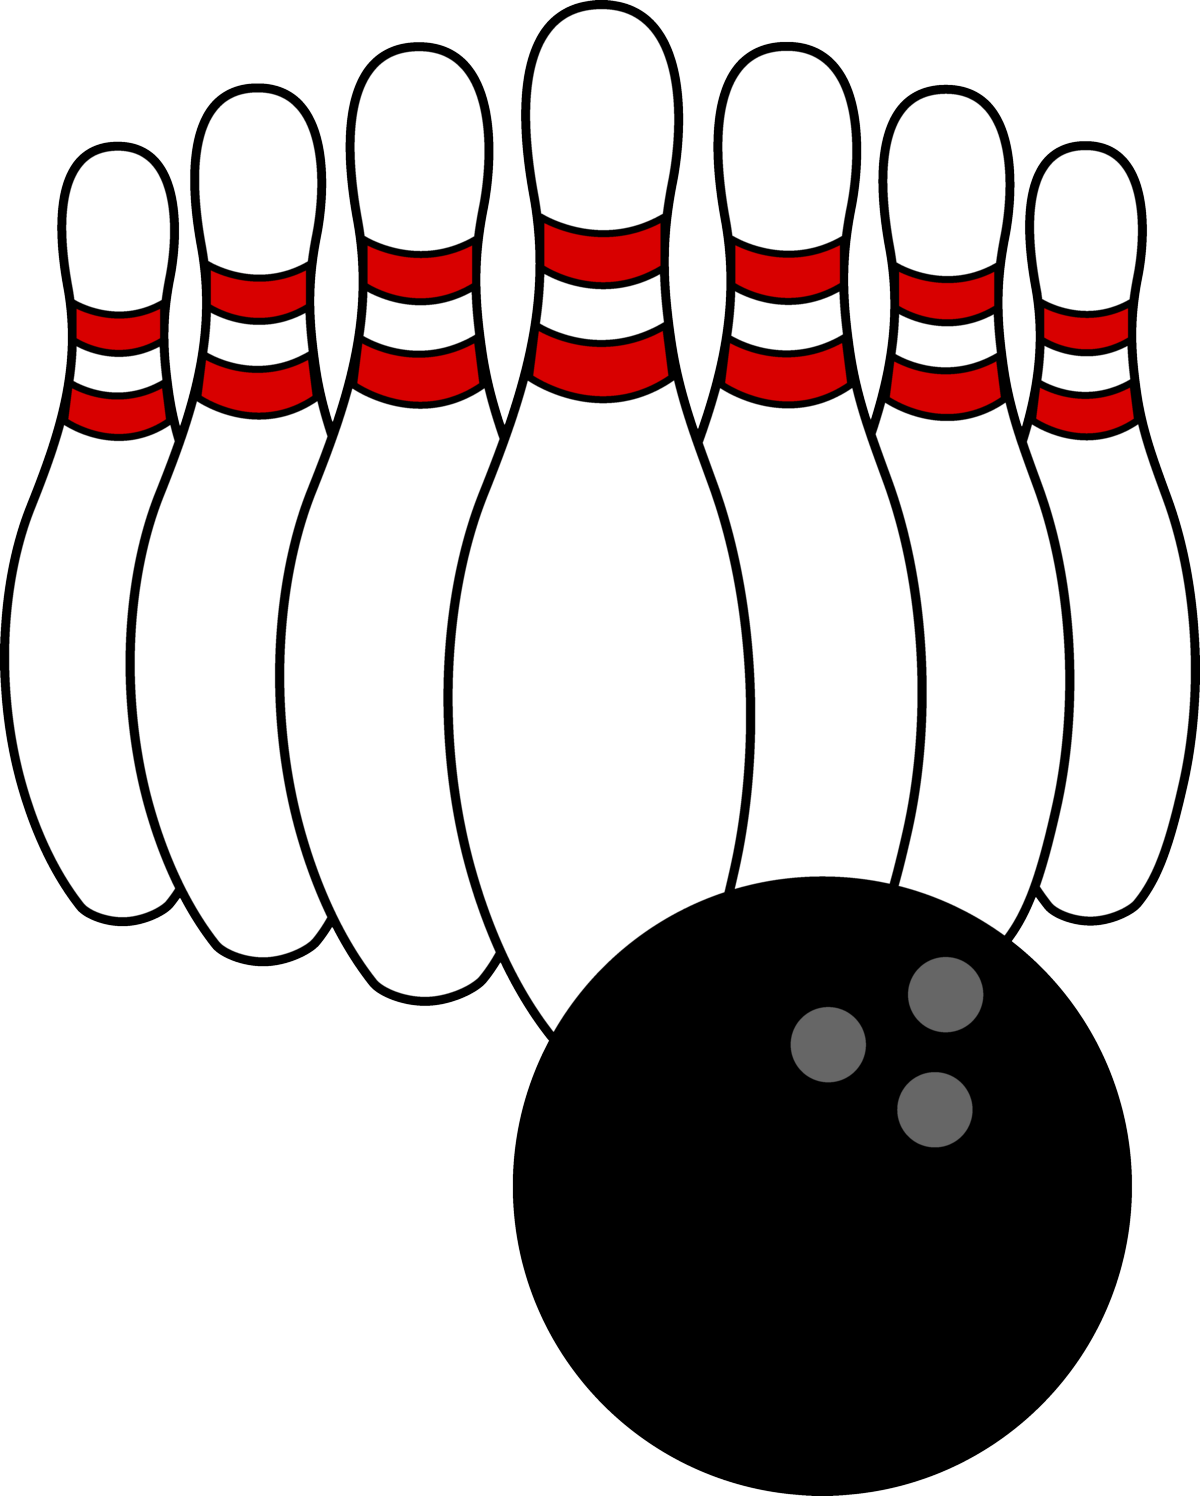 Bowling Ball And Pins - Bowling Ball And Pins (1200x1496)